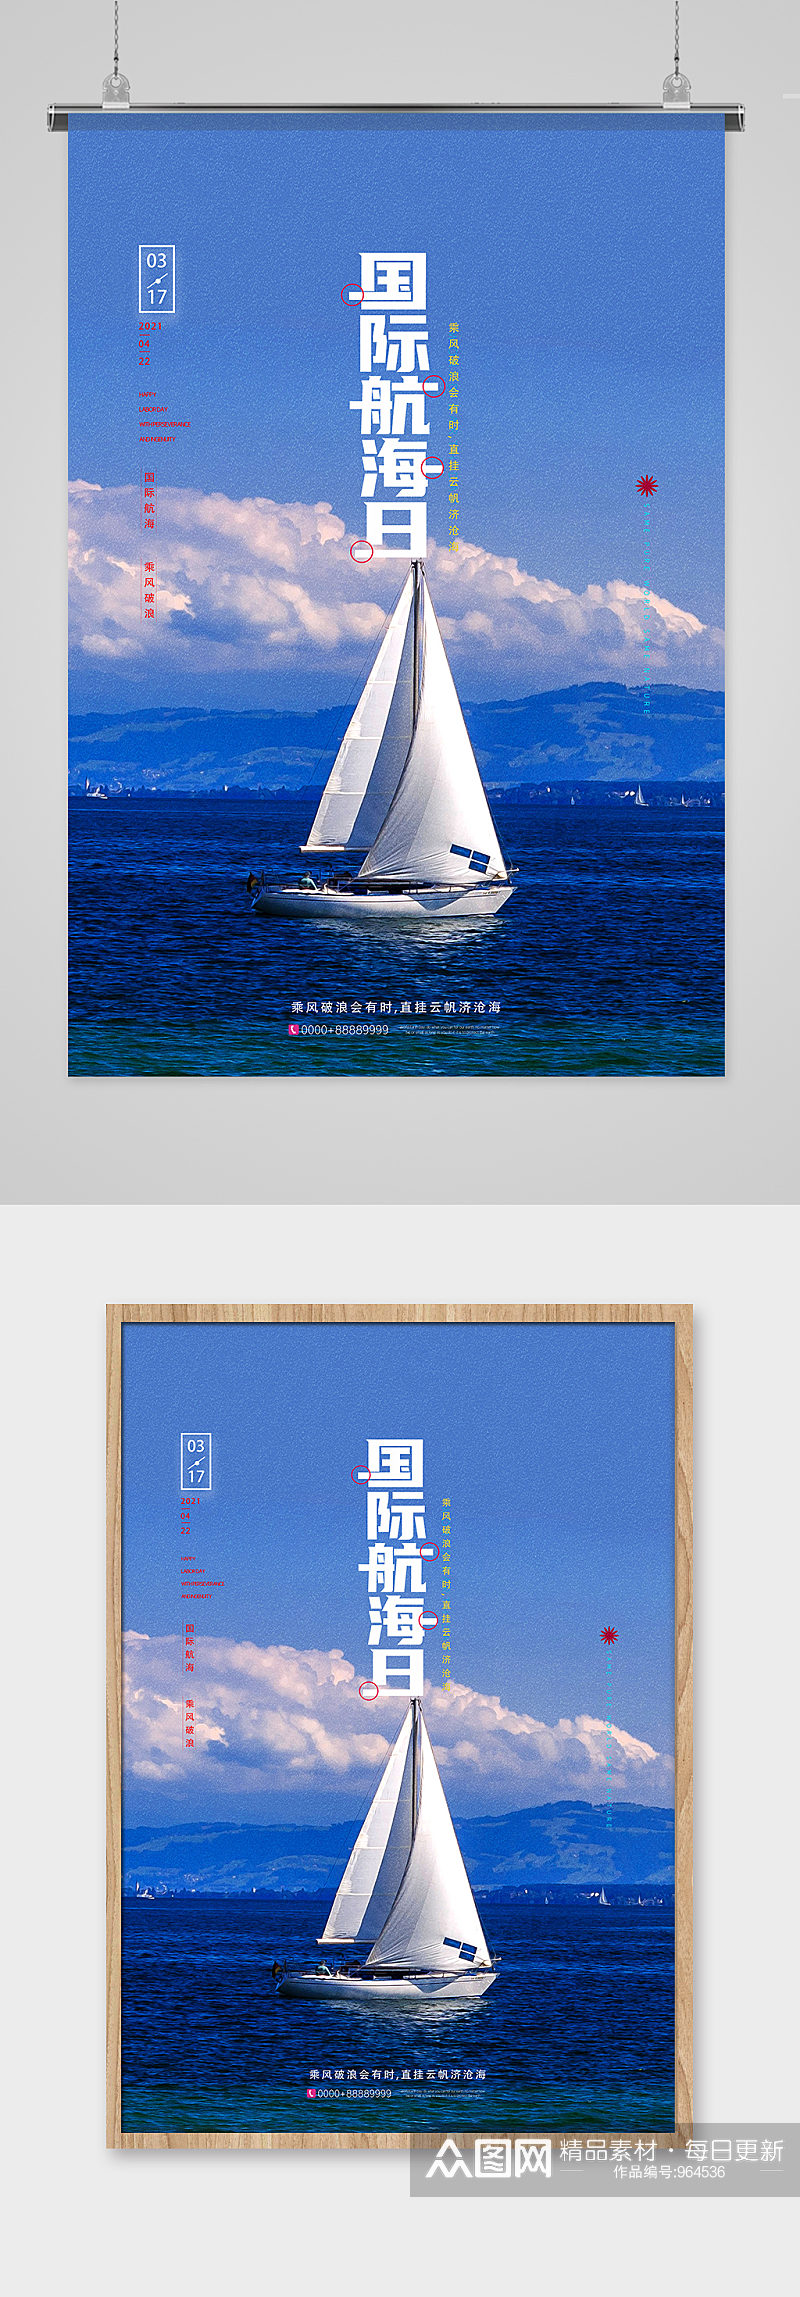 创意国际航海日宣传海报设计素材